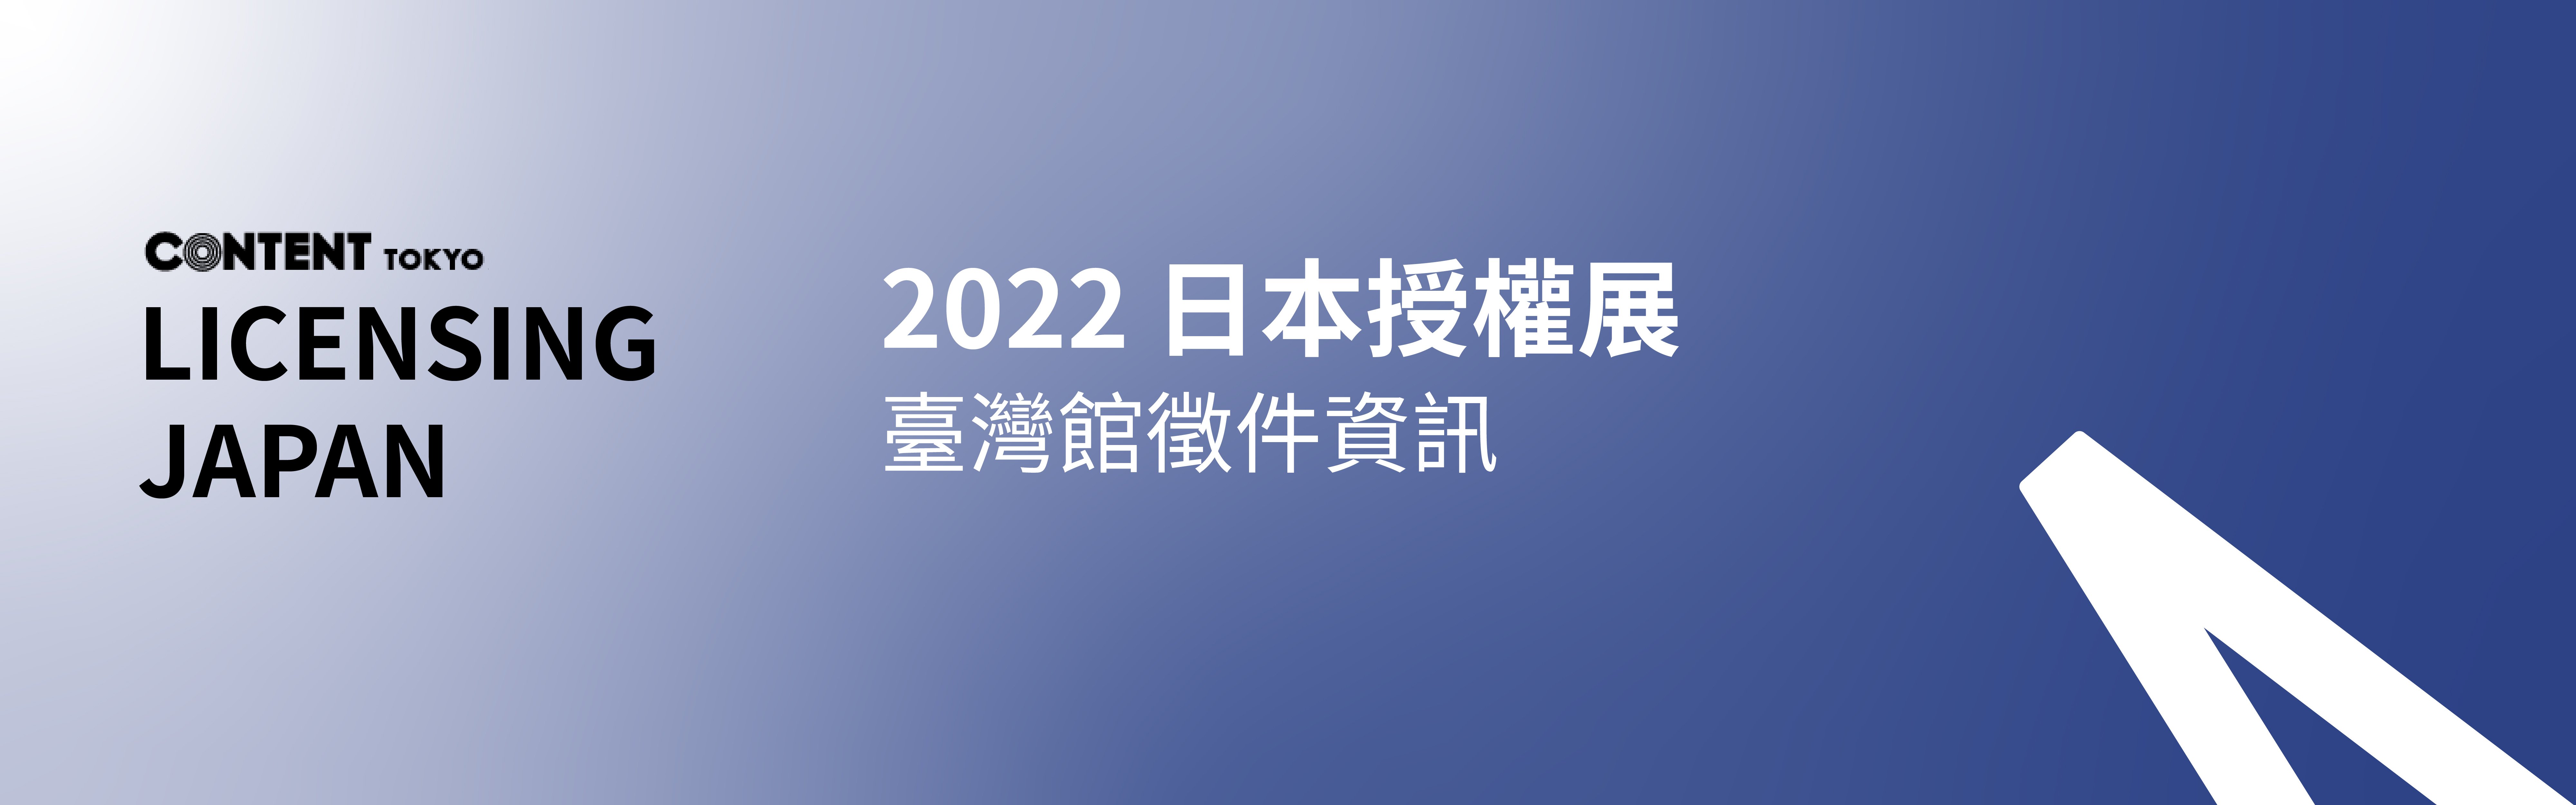 2022 日本授權展 臺灣館 徵展資訊